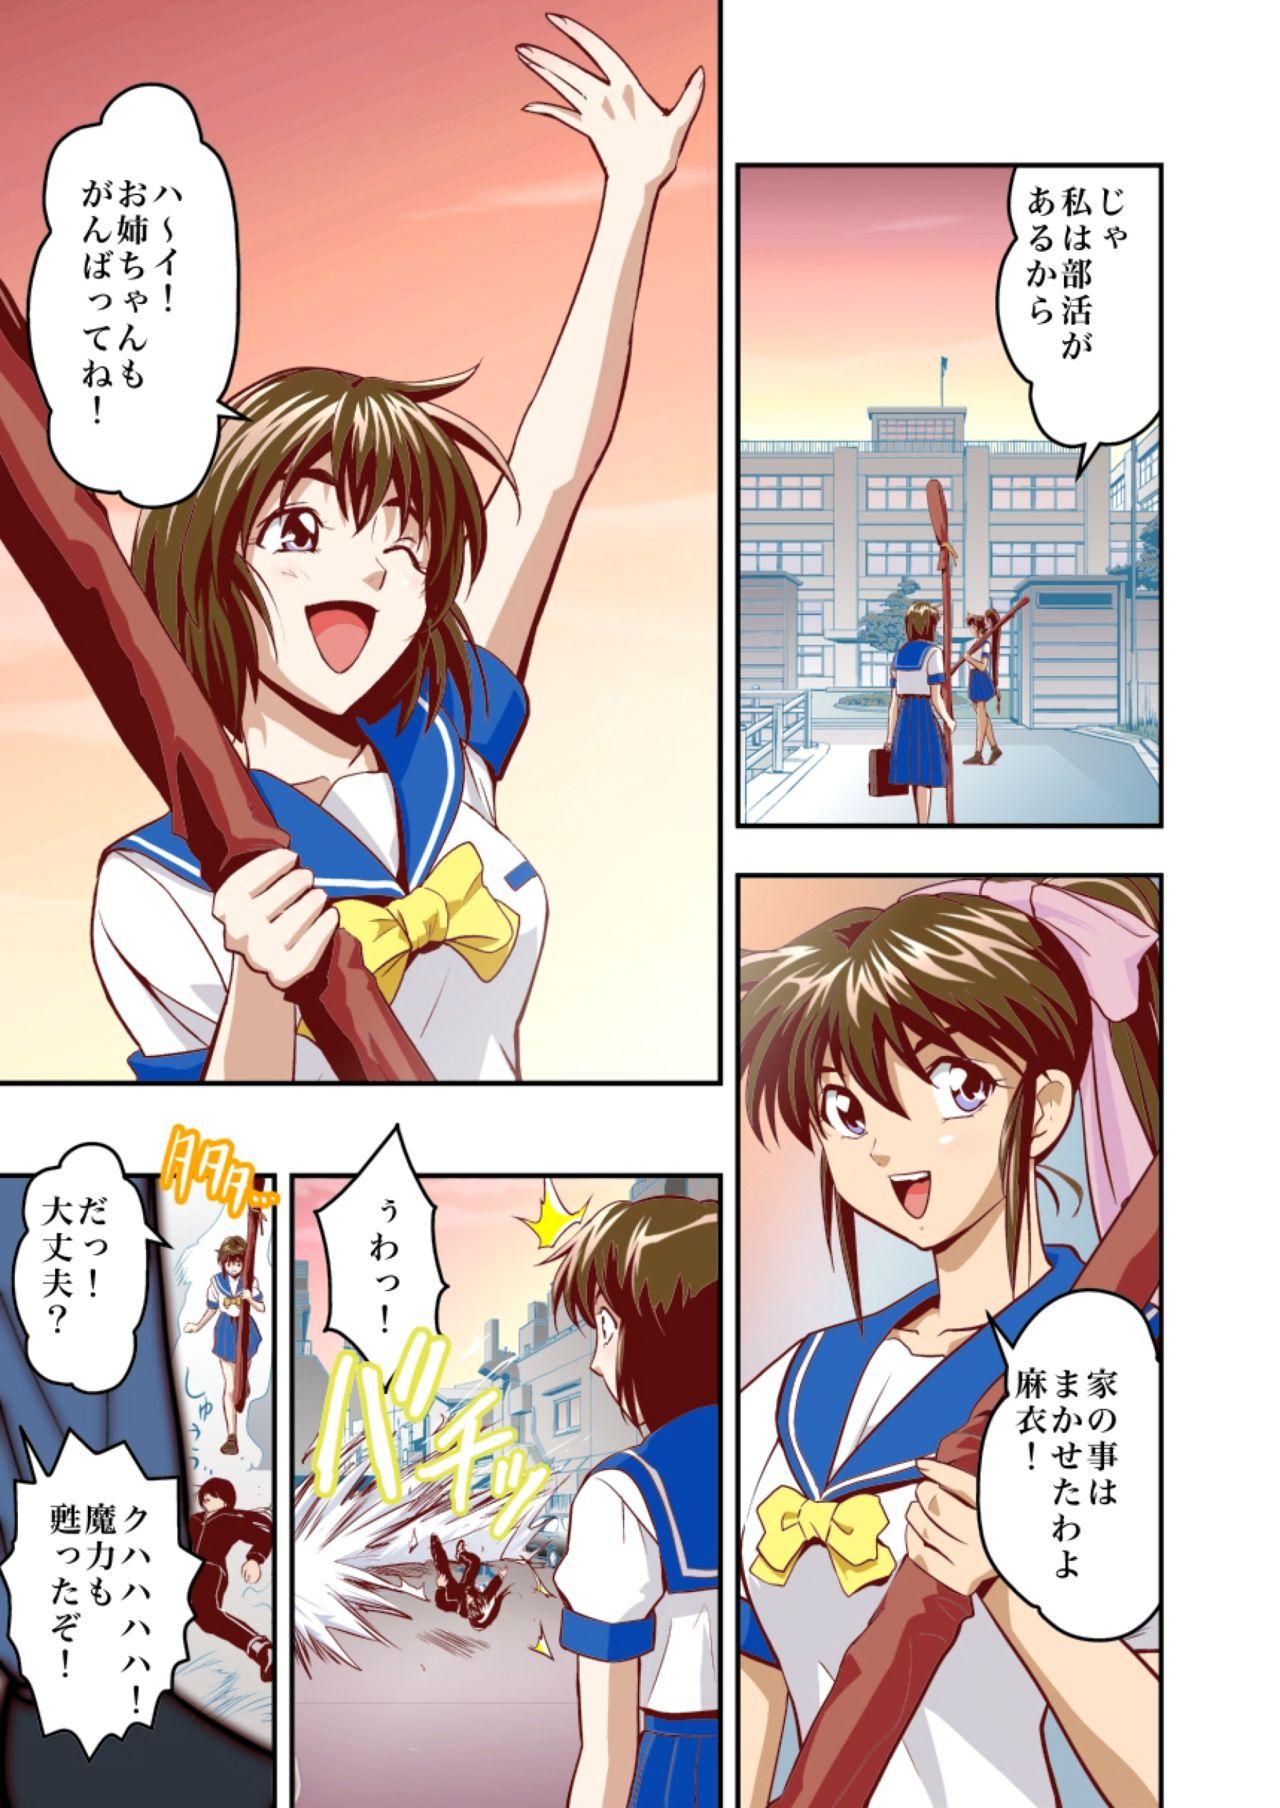 Flashing FallenXXangeL1 Ingyaku no Mai Joukan Full Color - Twin angels Whores - Page 5